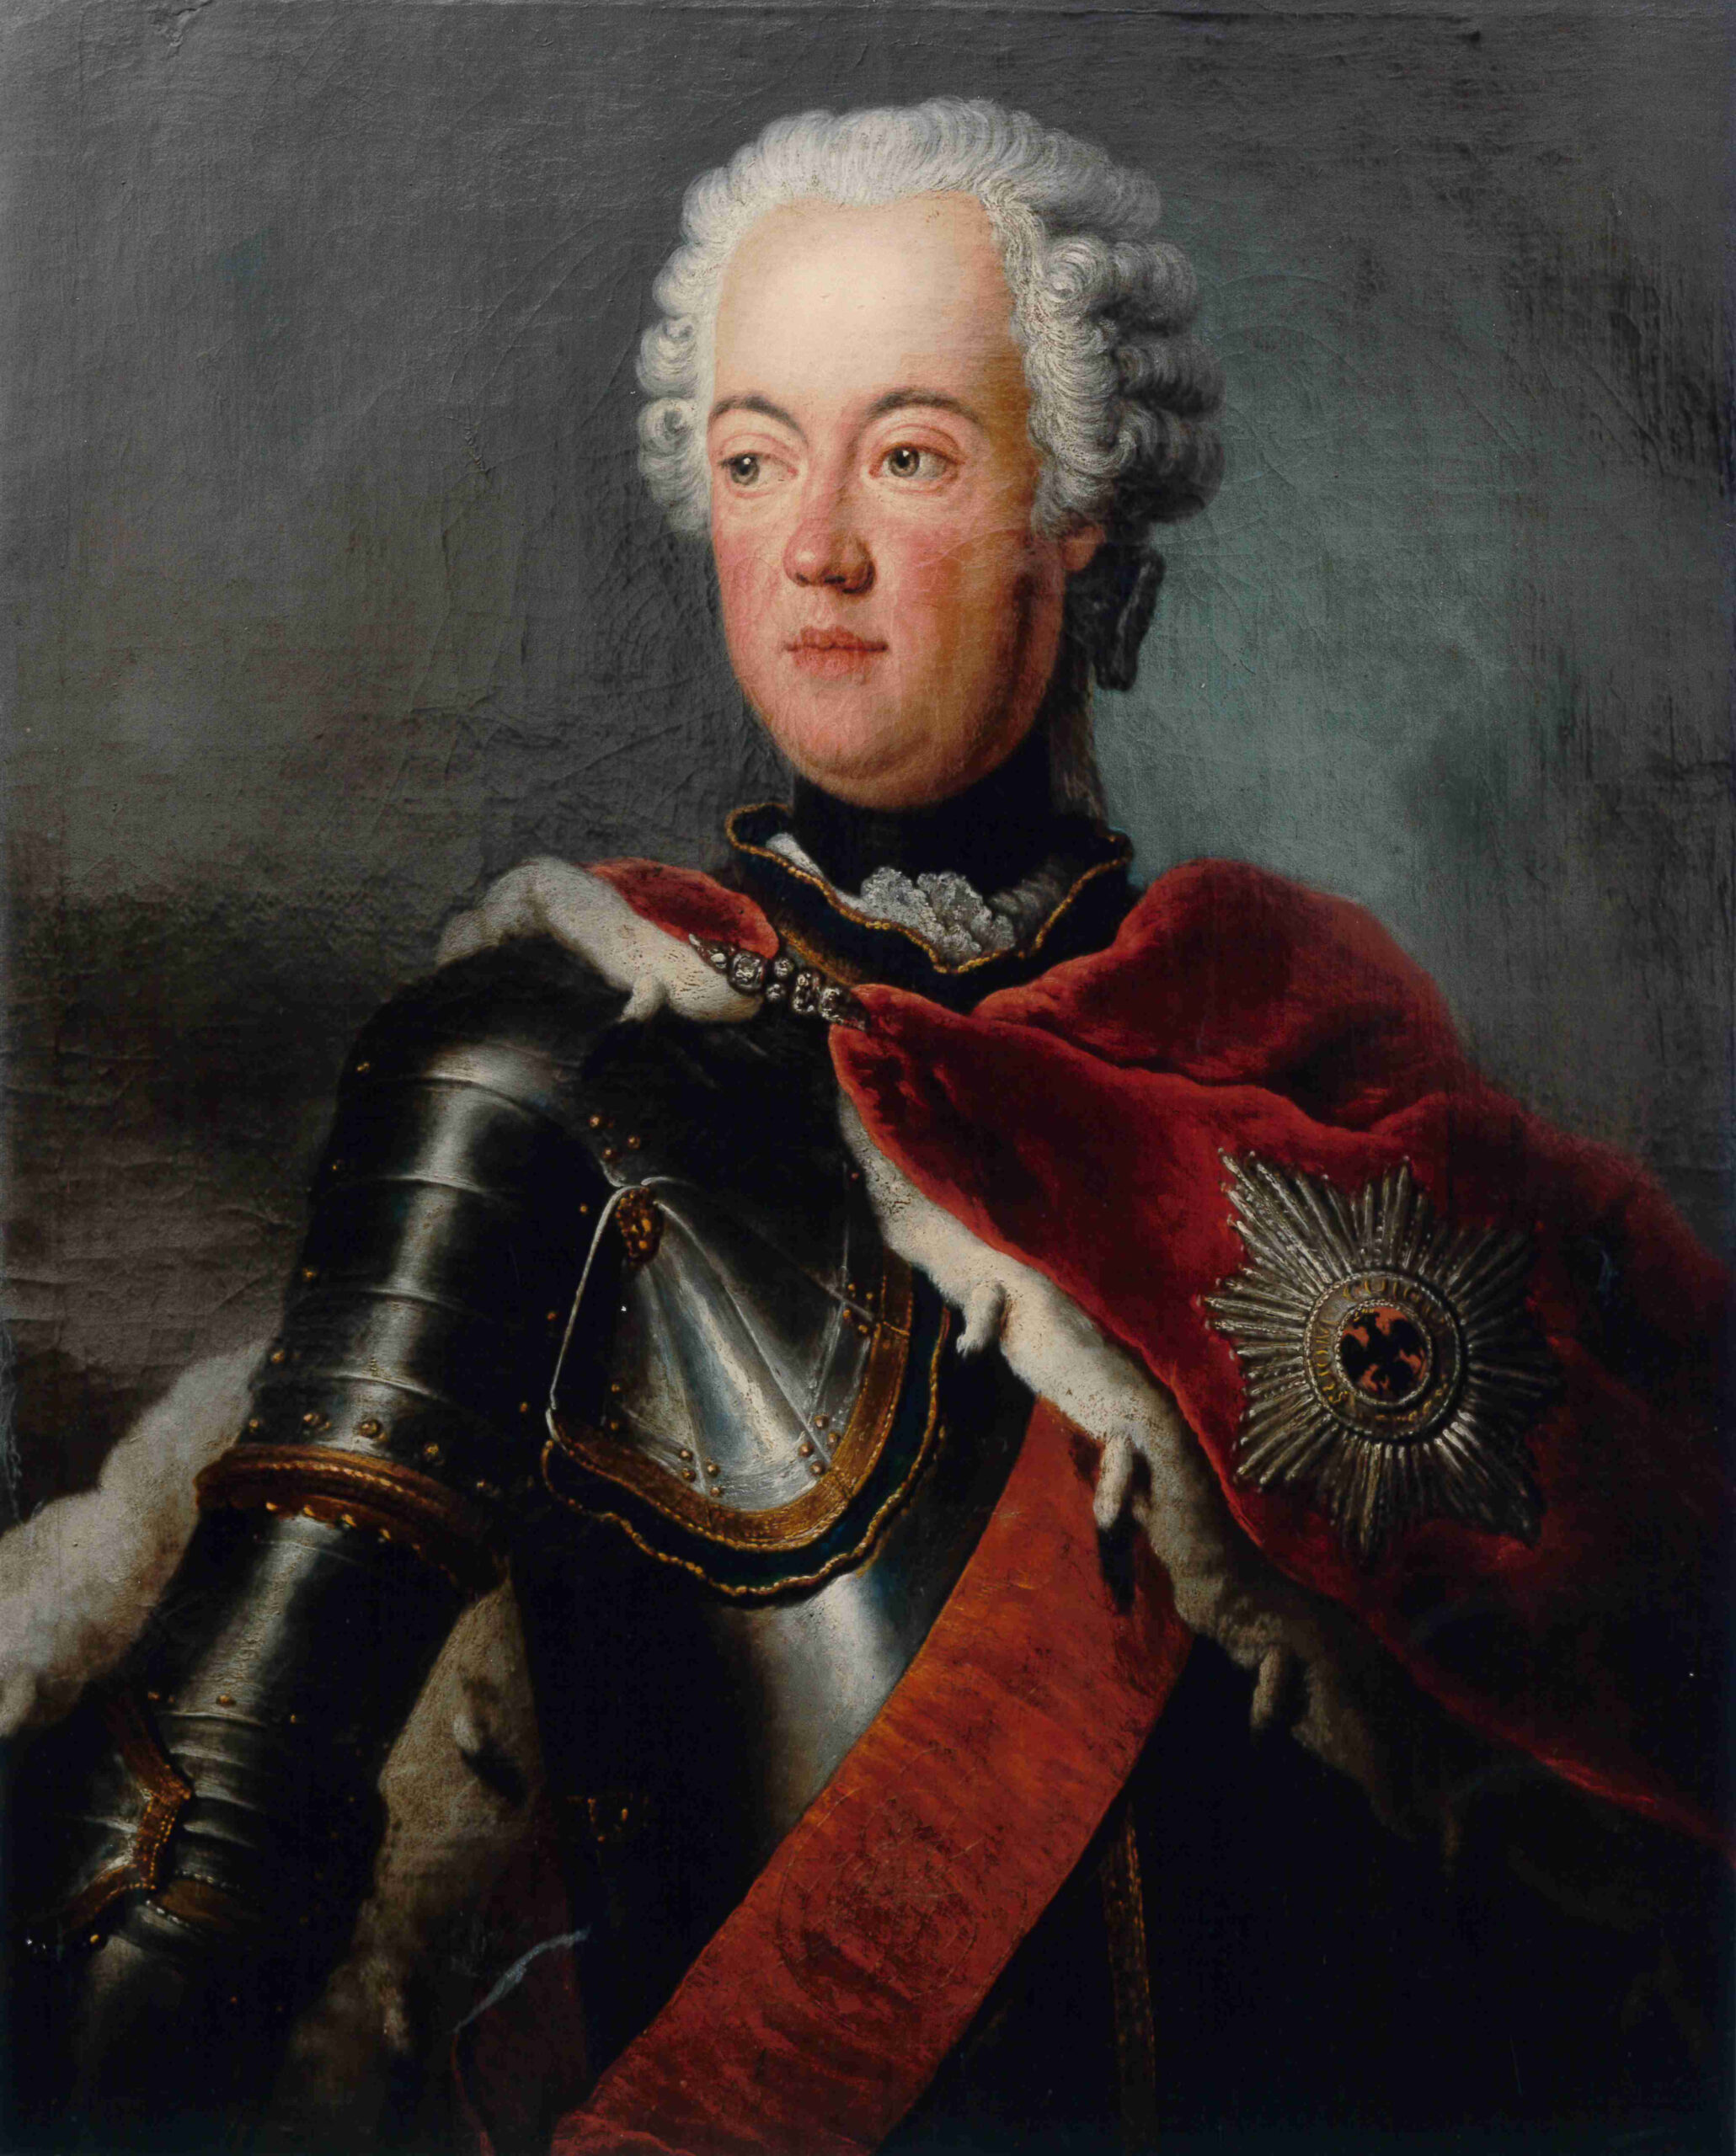 Der "Prince de Prusse", Thronfolger August Wilhelm Prinz in Preußen, Gemälde von Antoine Pesne 1755, BHZ, Foto R. Beck